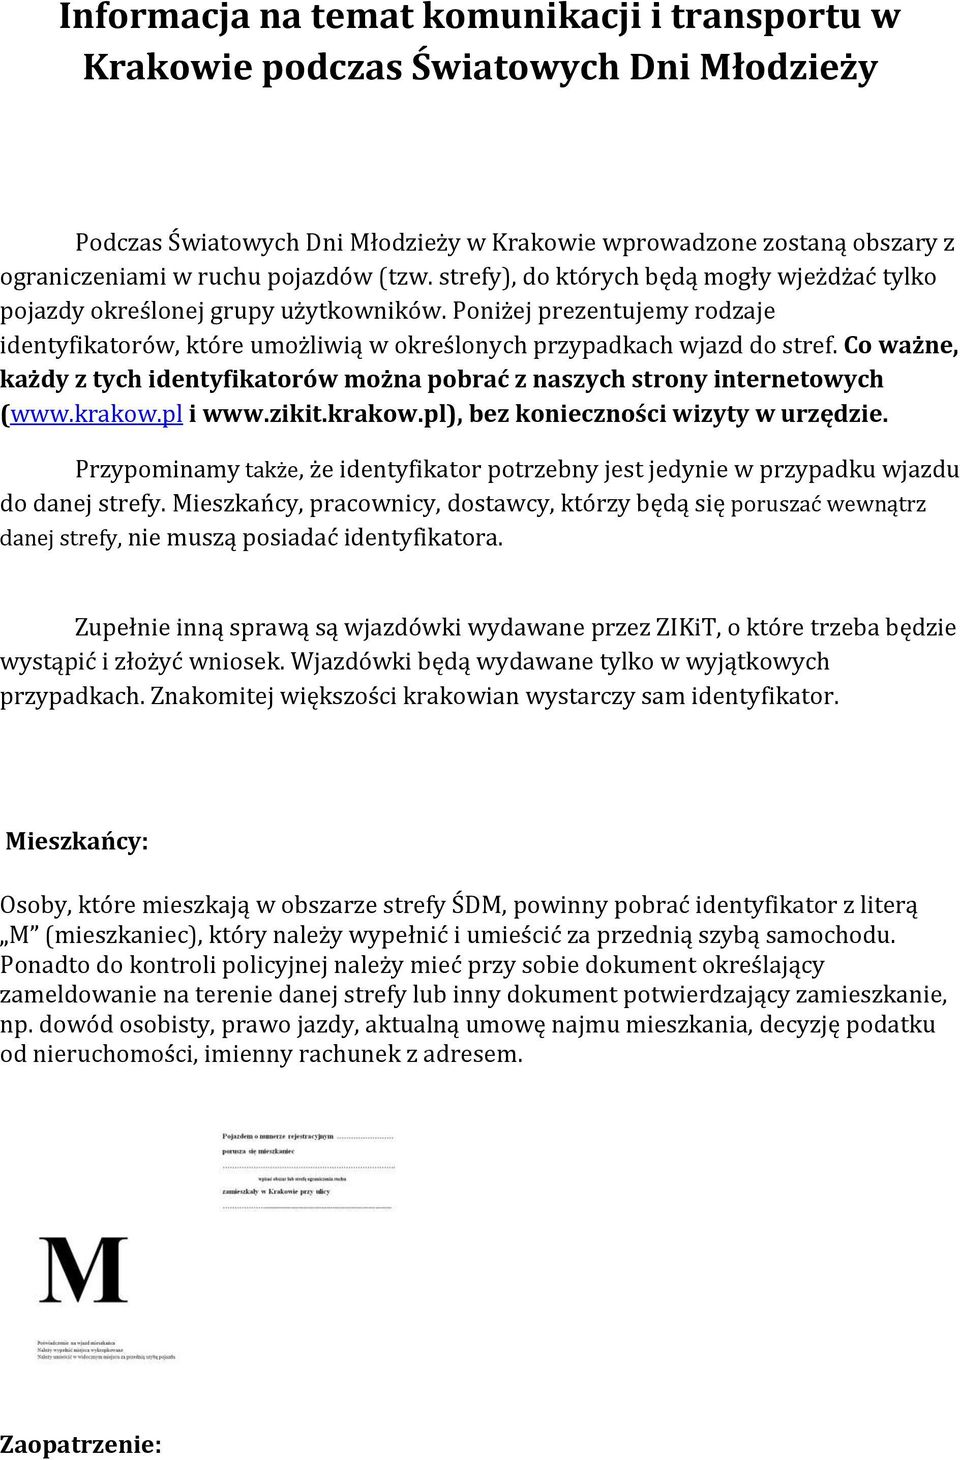 Co ważne, każdy z tych identyfikatorów można pobrać z naszych strony internetowych (www.krakow.pl i www.zikit.krakow.pl), bez konieczności wizyty w urzędzie.